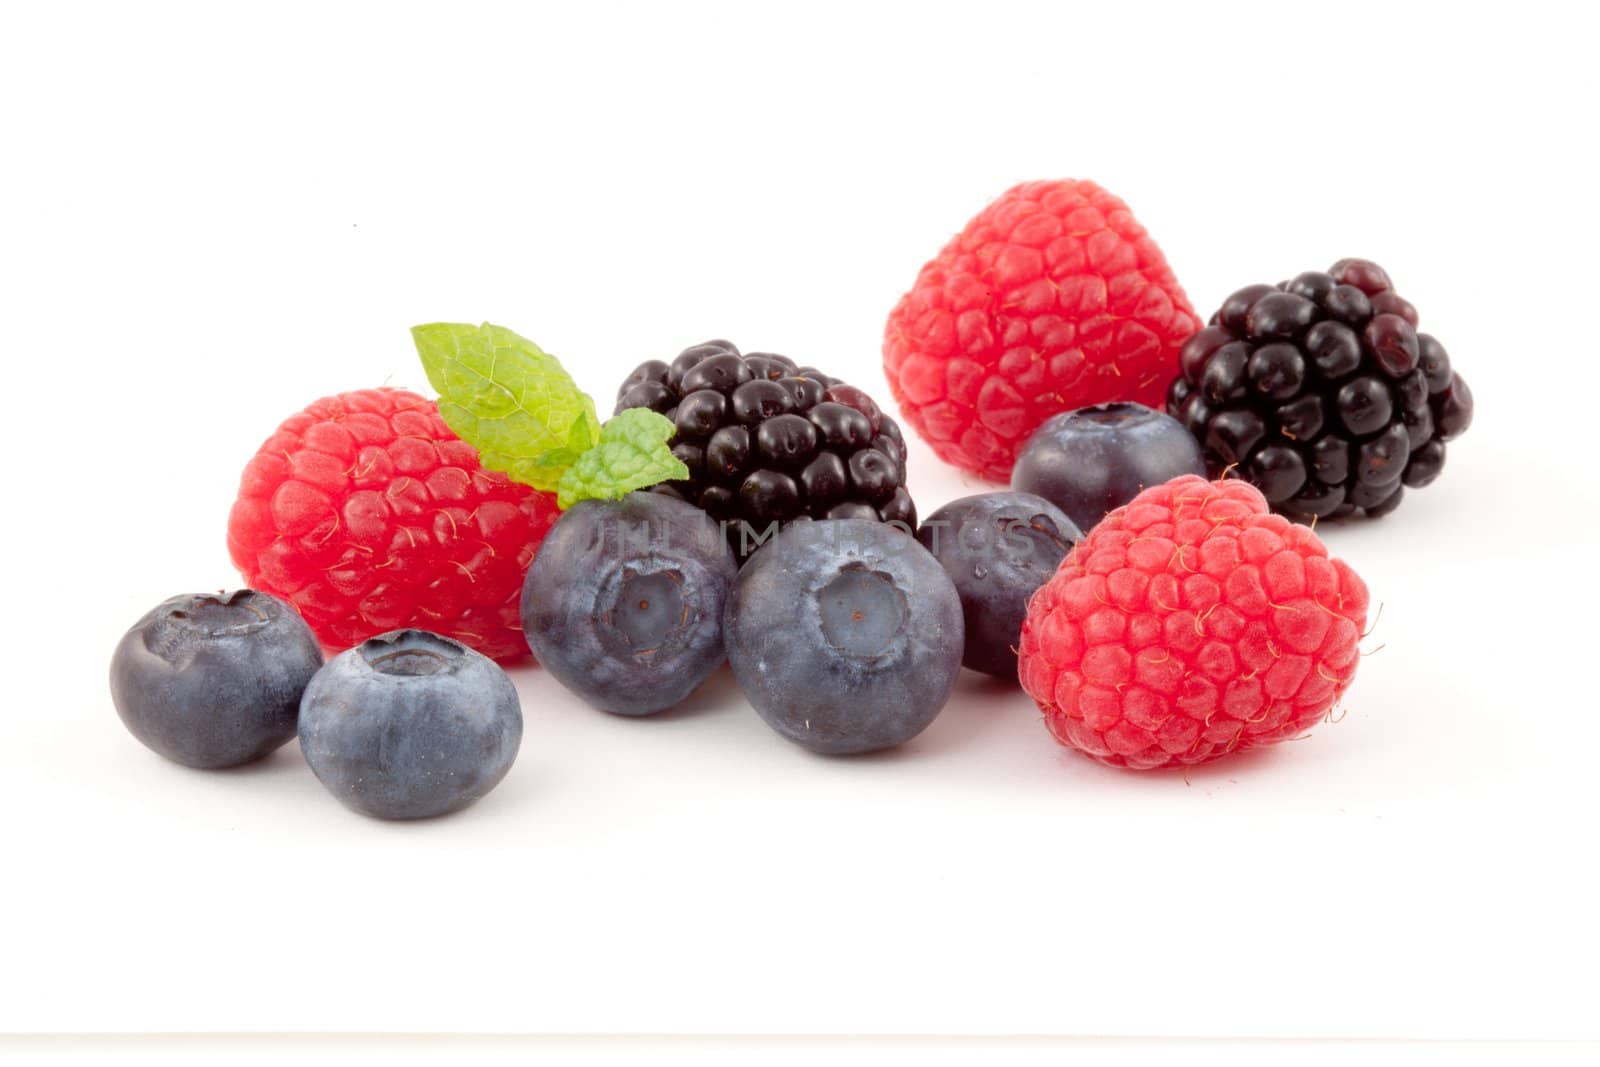 Choice of berries by Wavebreakmedia